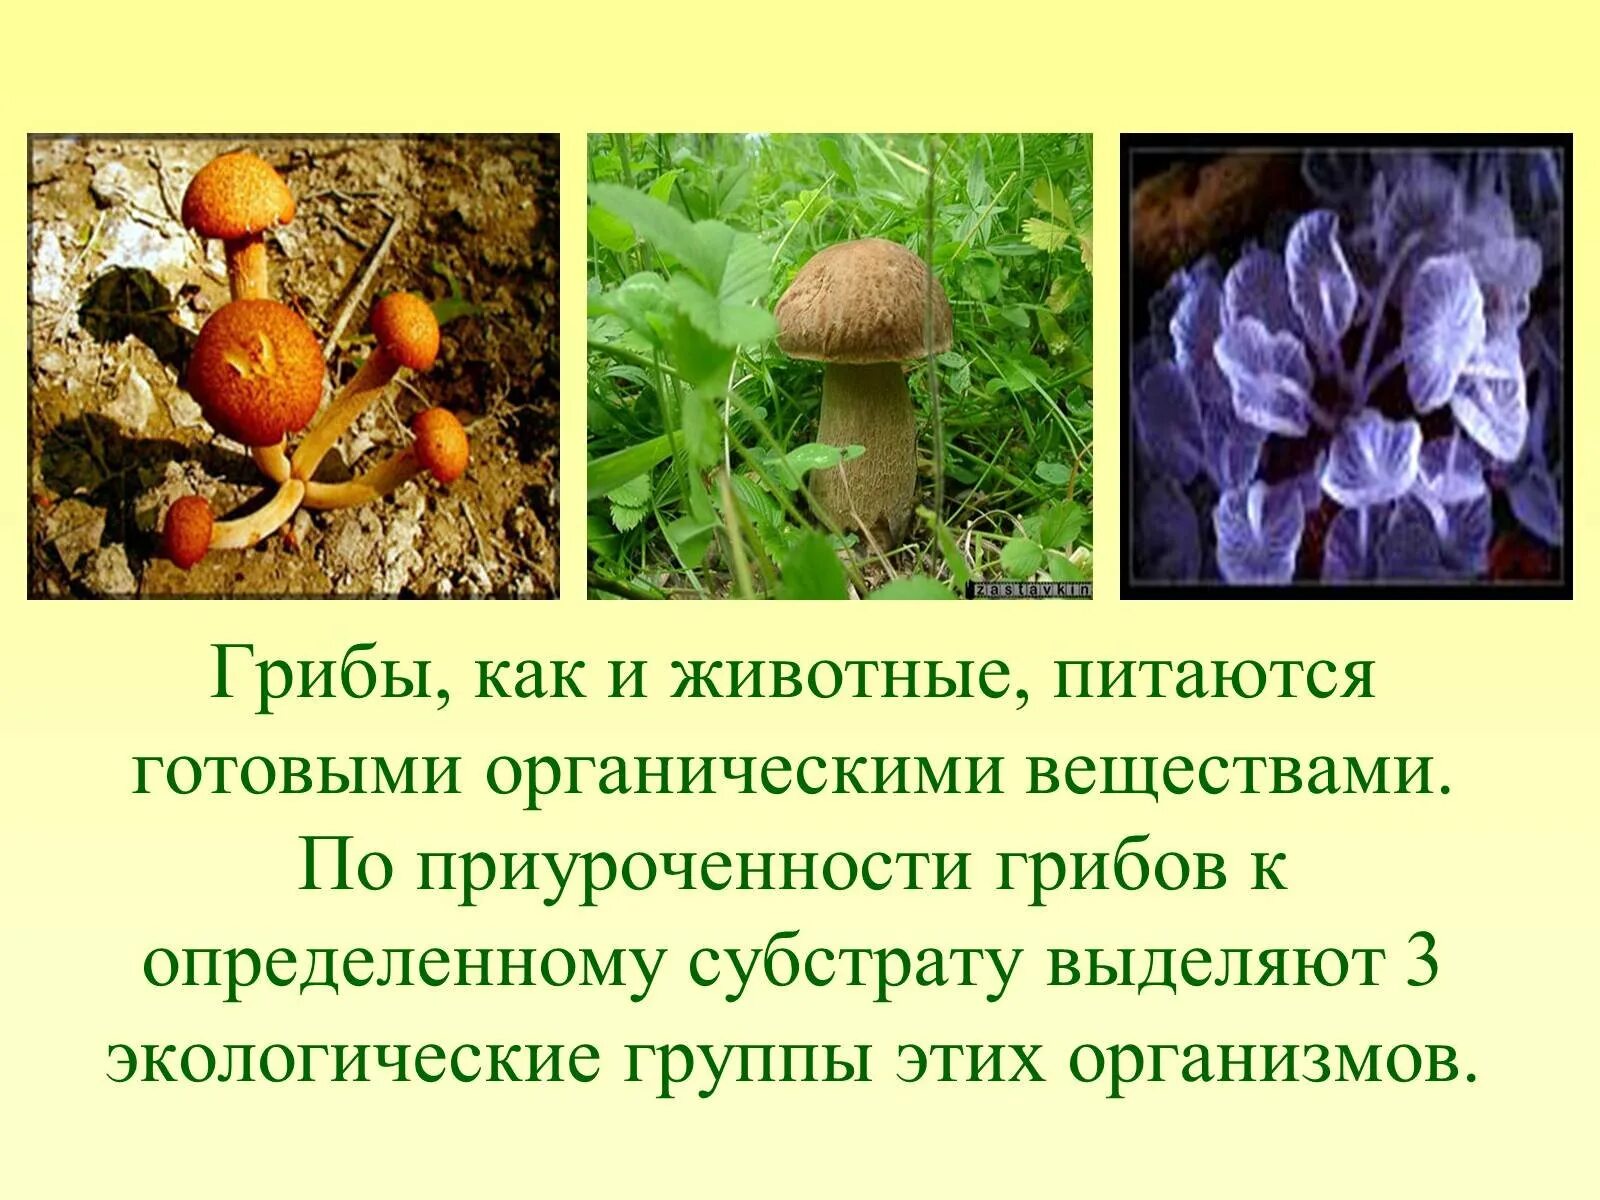 Кто питается готовыми органическими. Роль грибов в природе. Грибы питаются органическими веществами. Грибы для человека и природы. Важность грибов в природе.